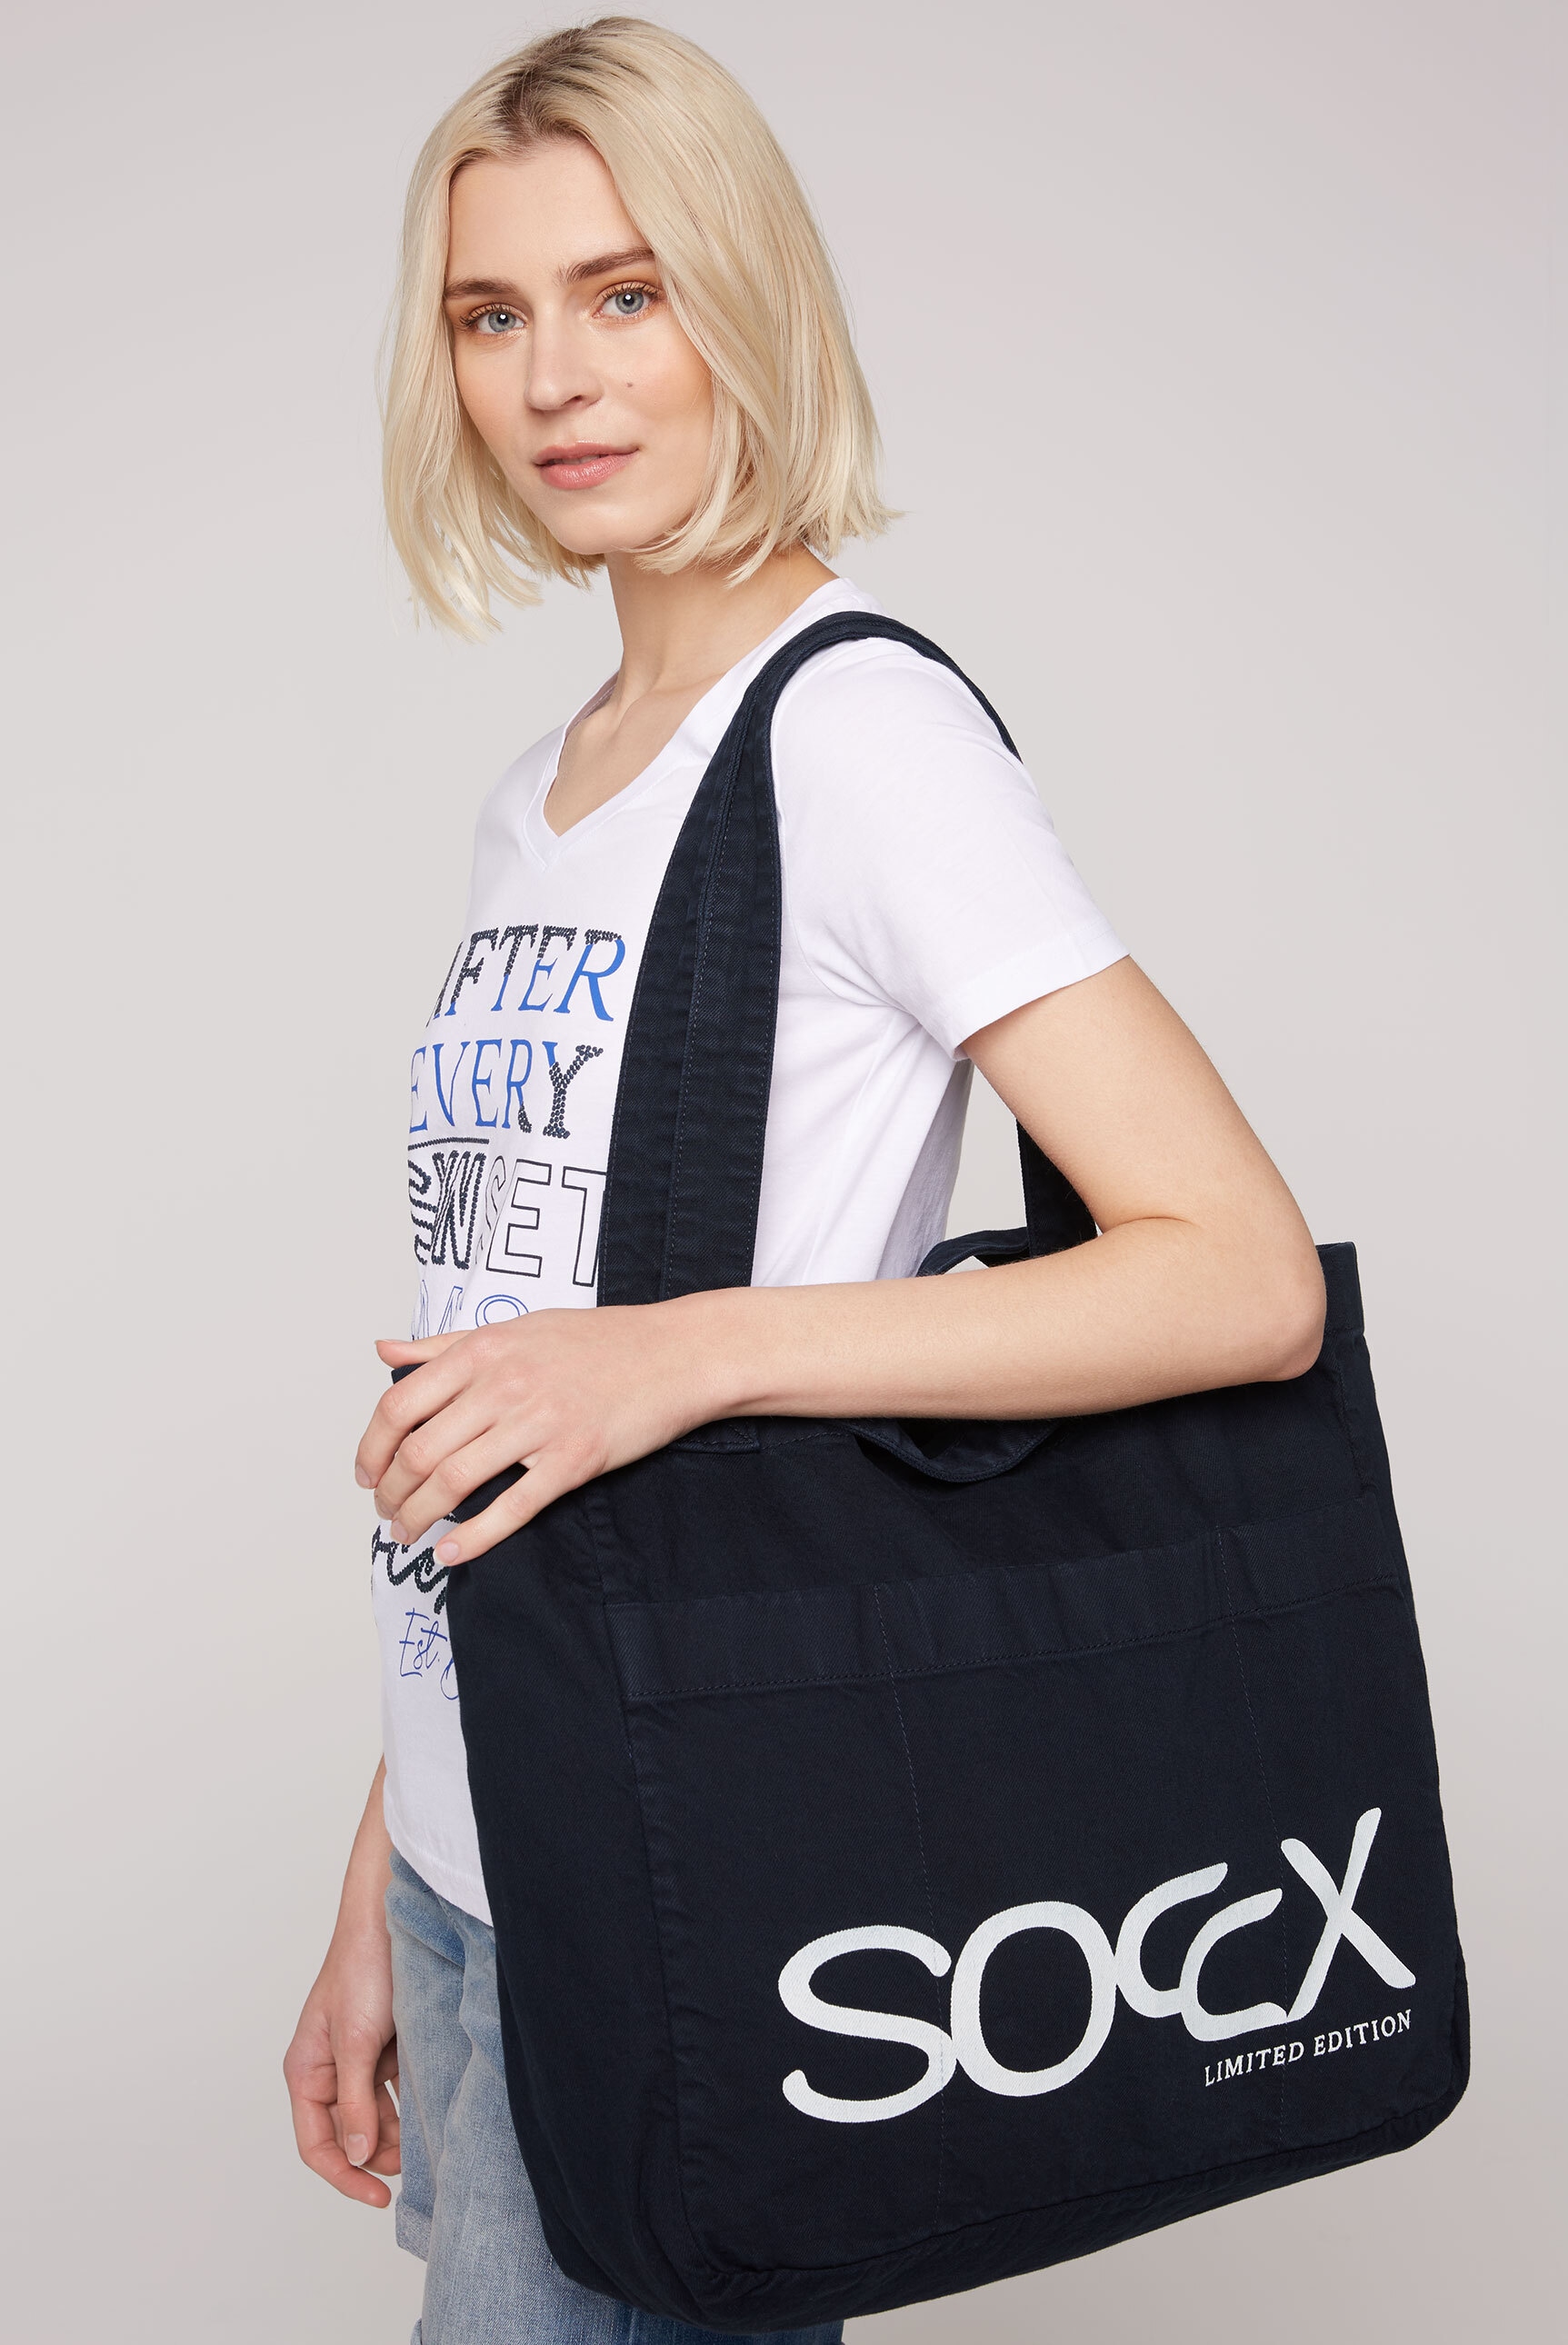 SOCCX Strandtasche, mit Vorfächer